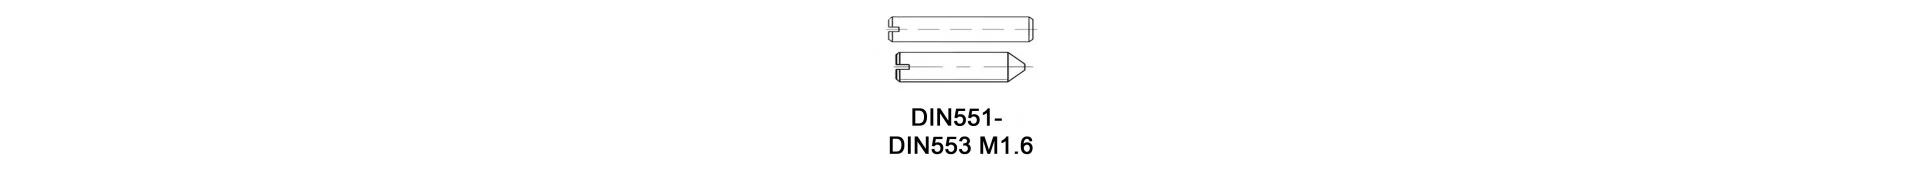 DIN551 - DIN553 M1.6